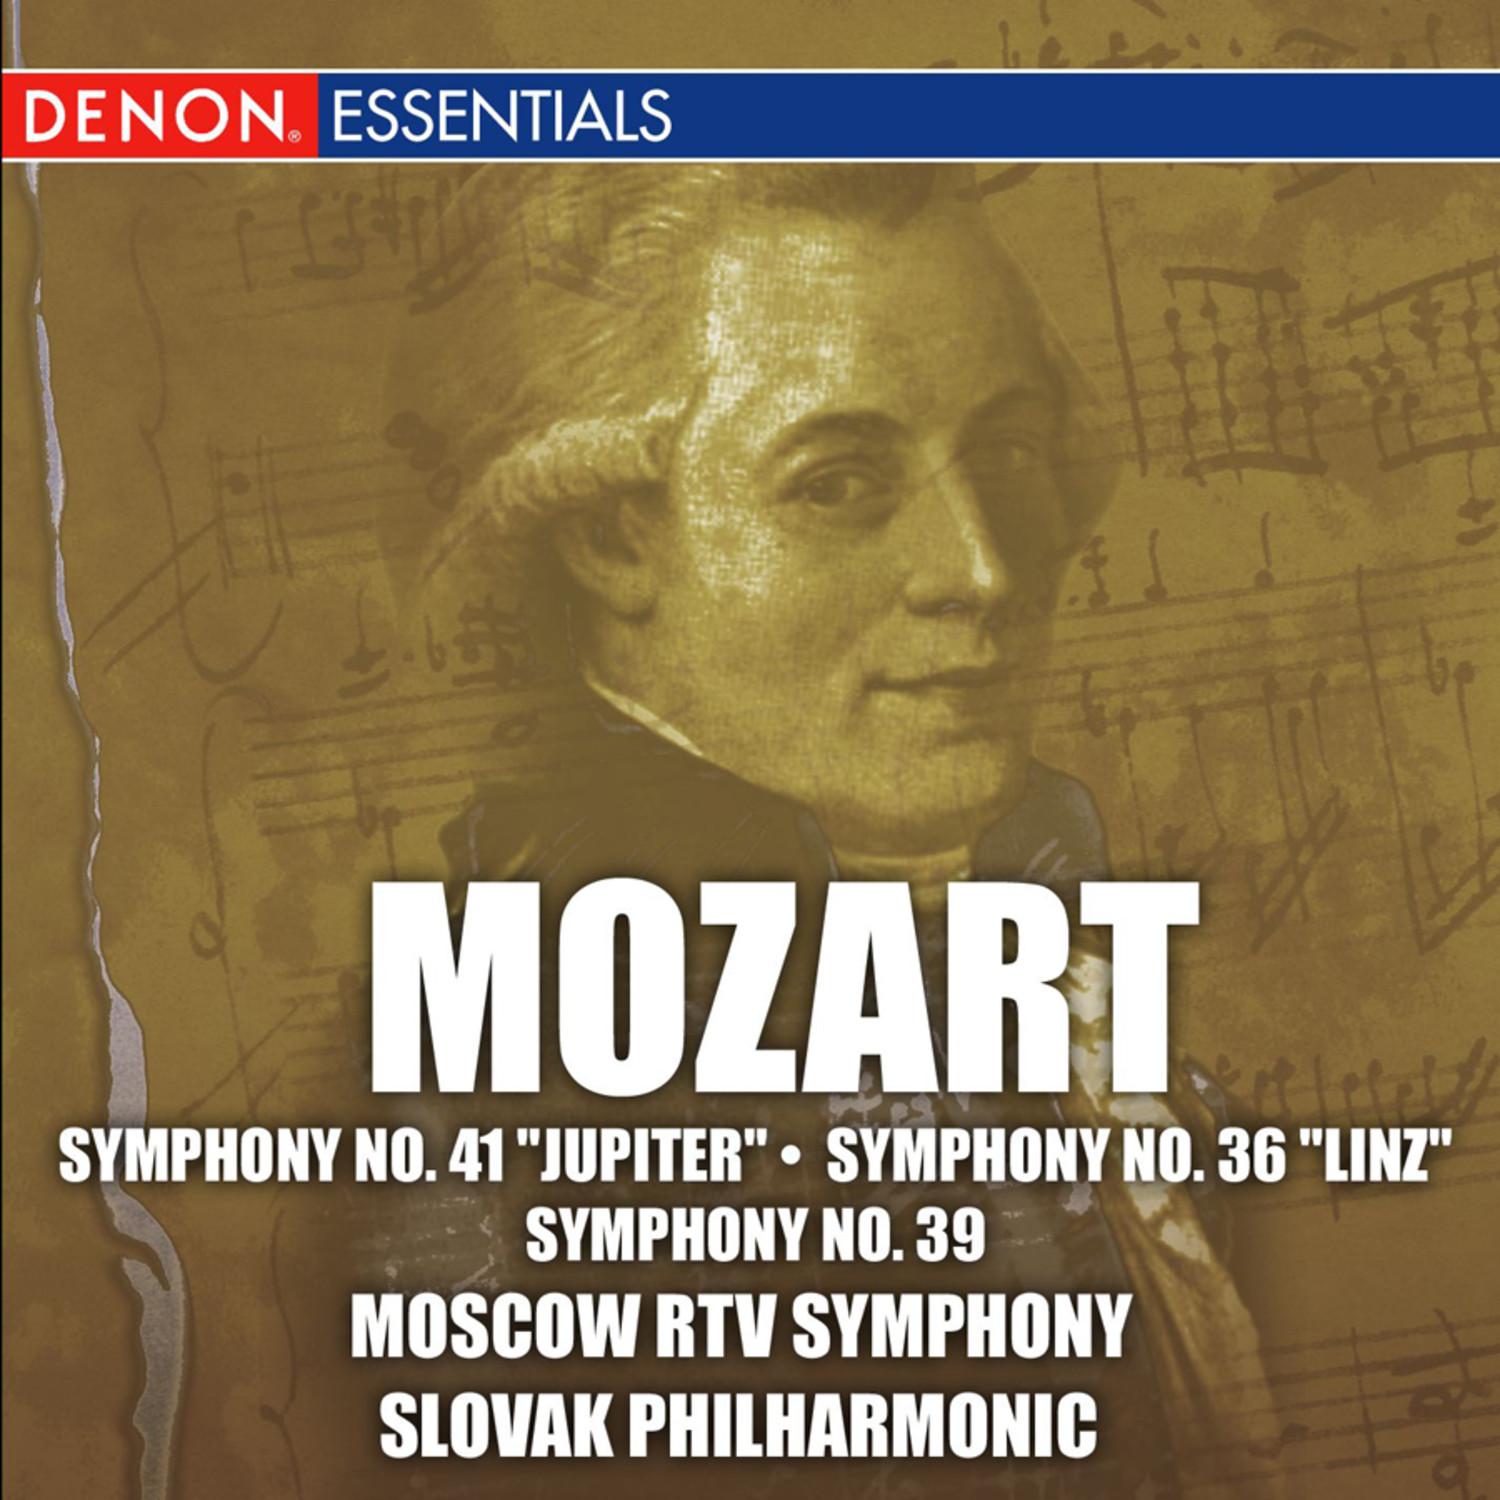 "Symphony No. 36 in C major, KV 425 ""Linz"": I. Adagio - Allegro spirituoso